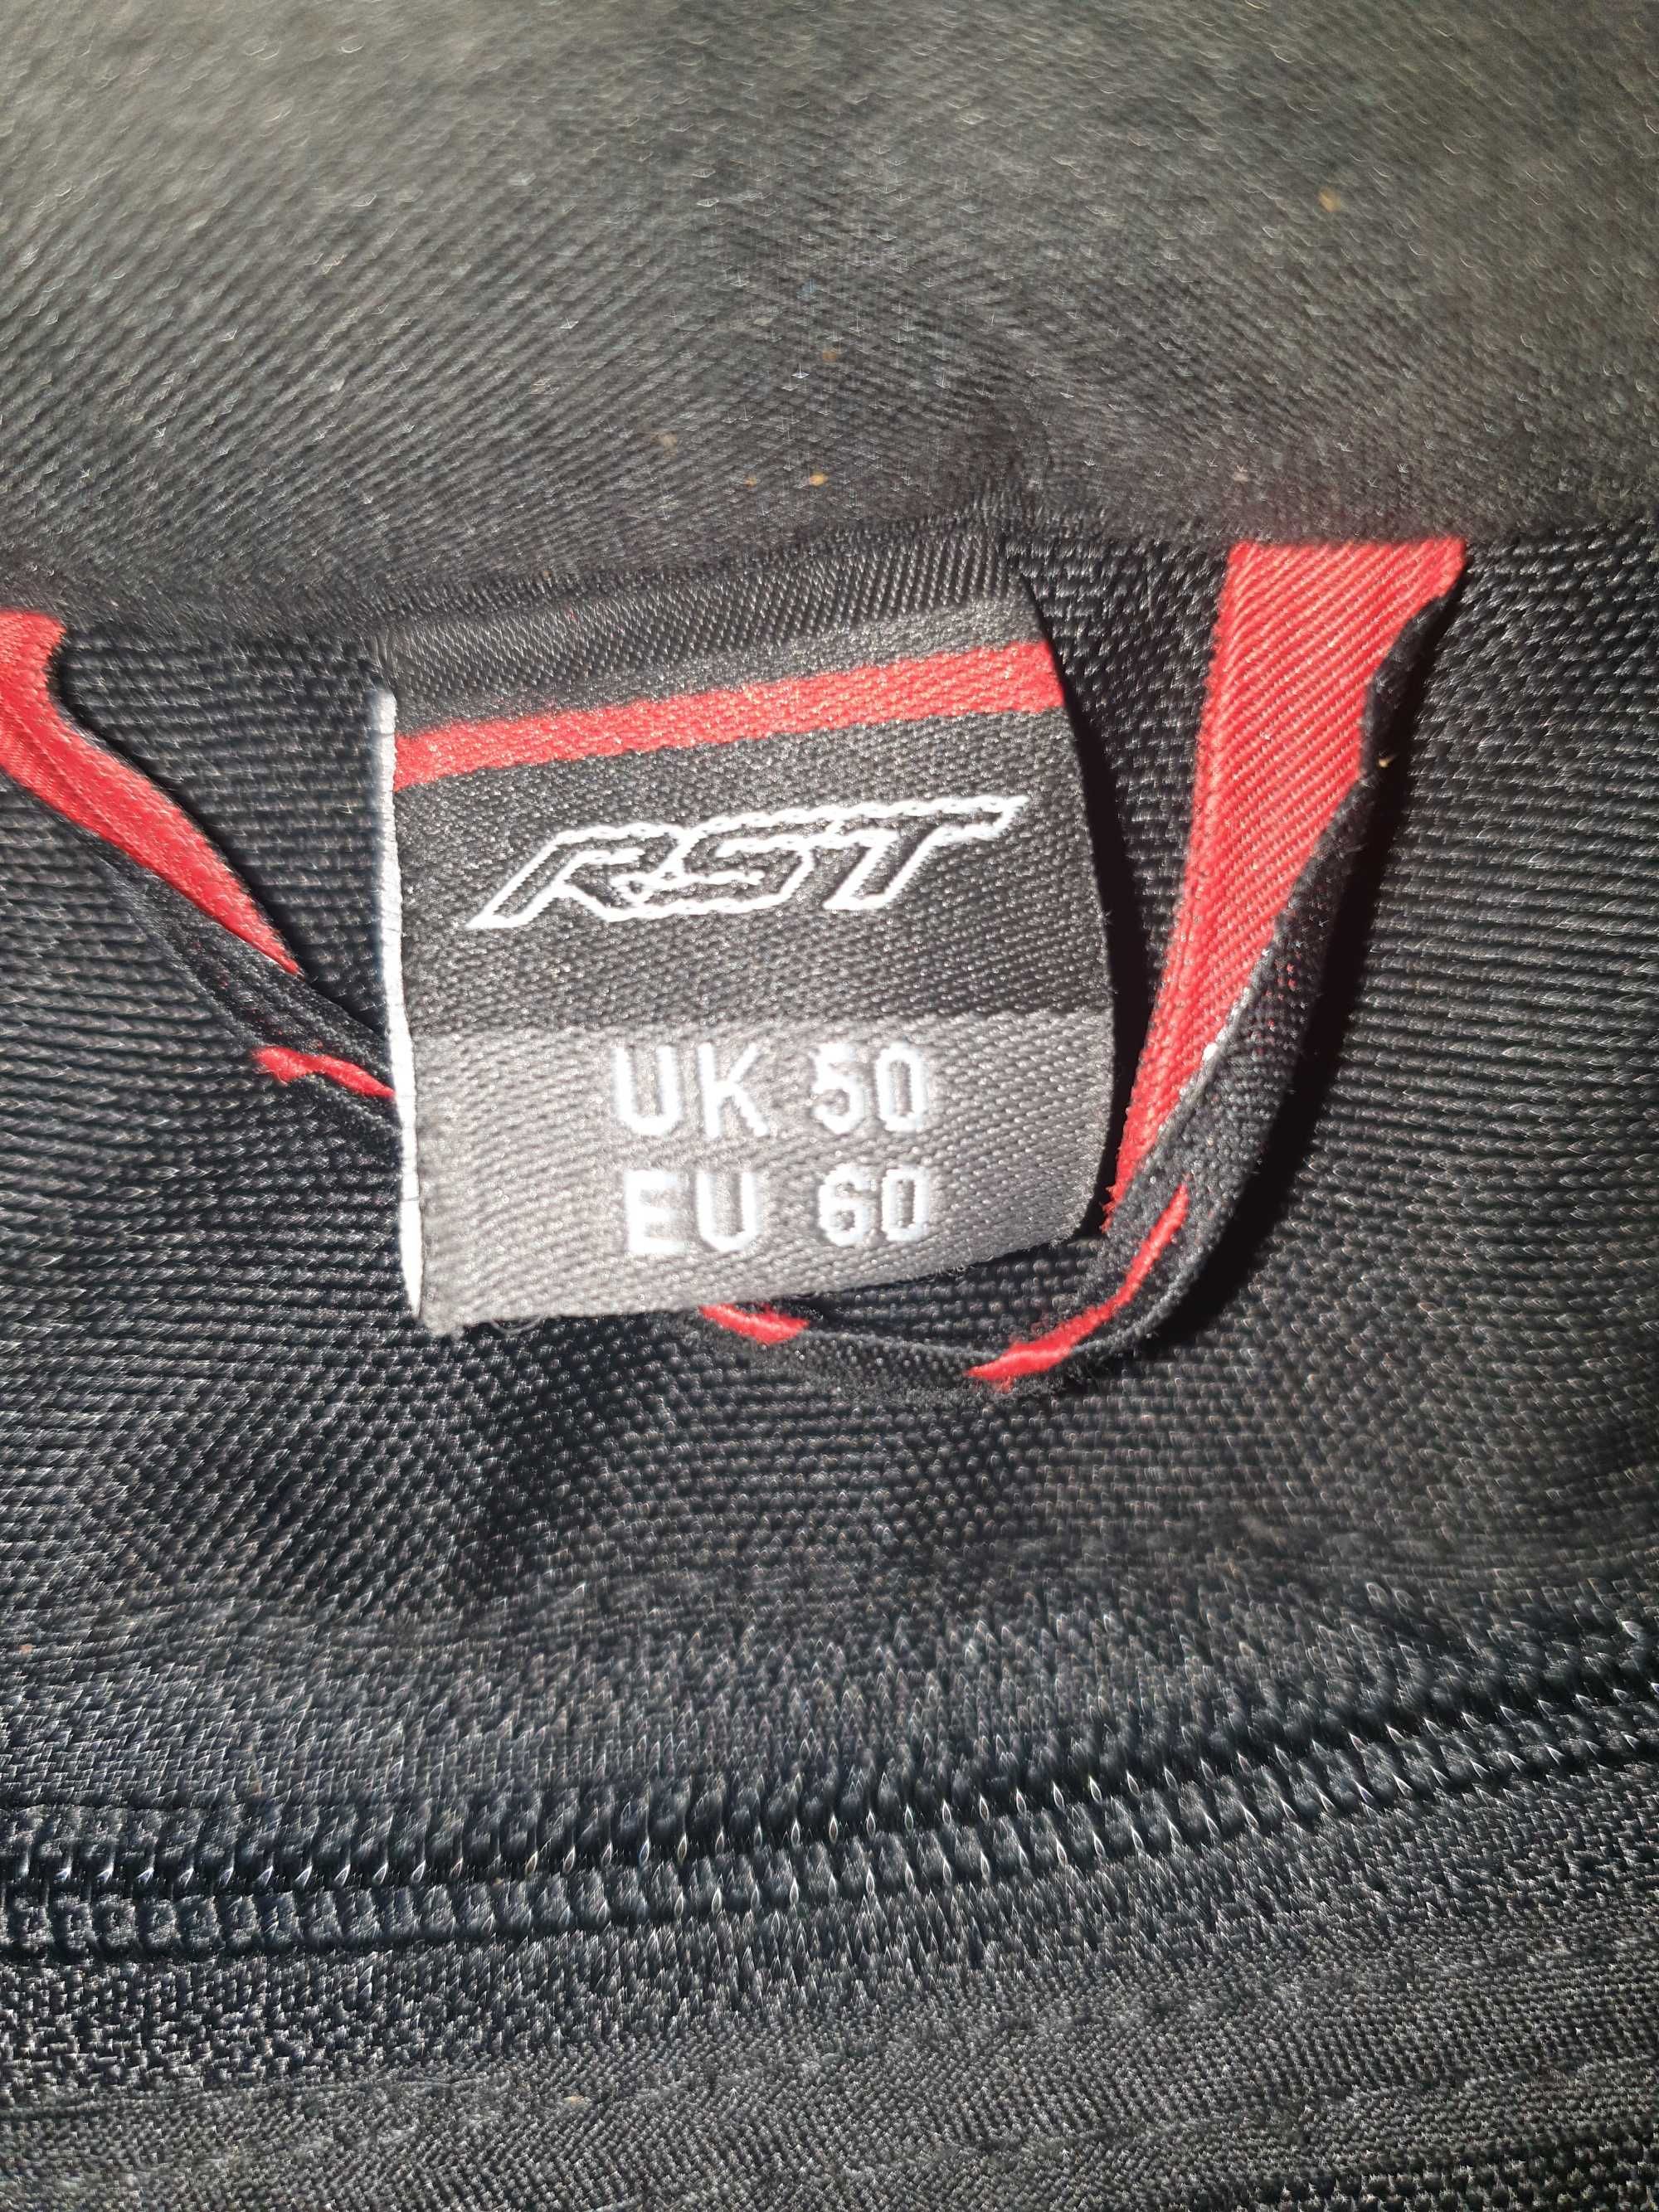 Текстилно яке RST-Air vent pro series..RAZMER UK-50.EU-60